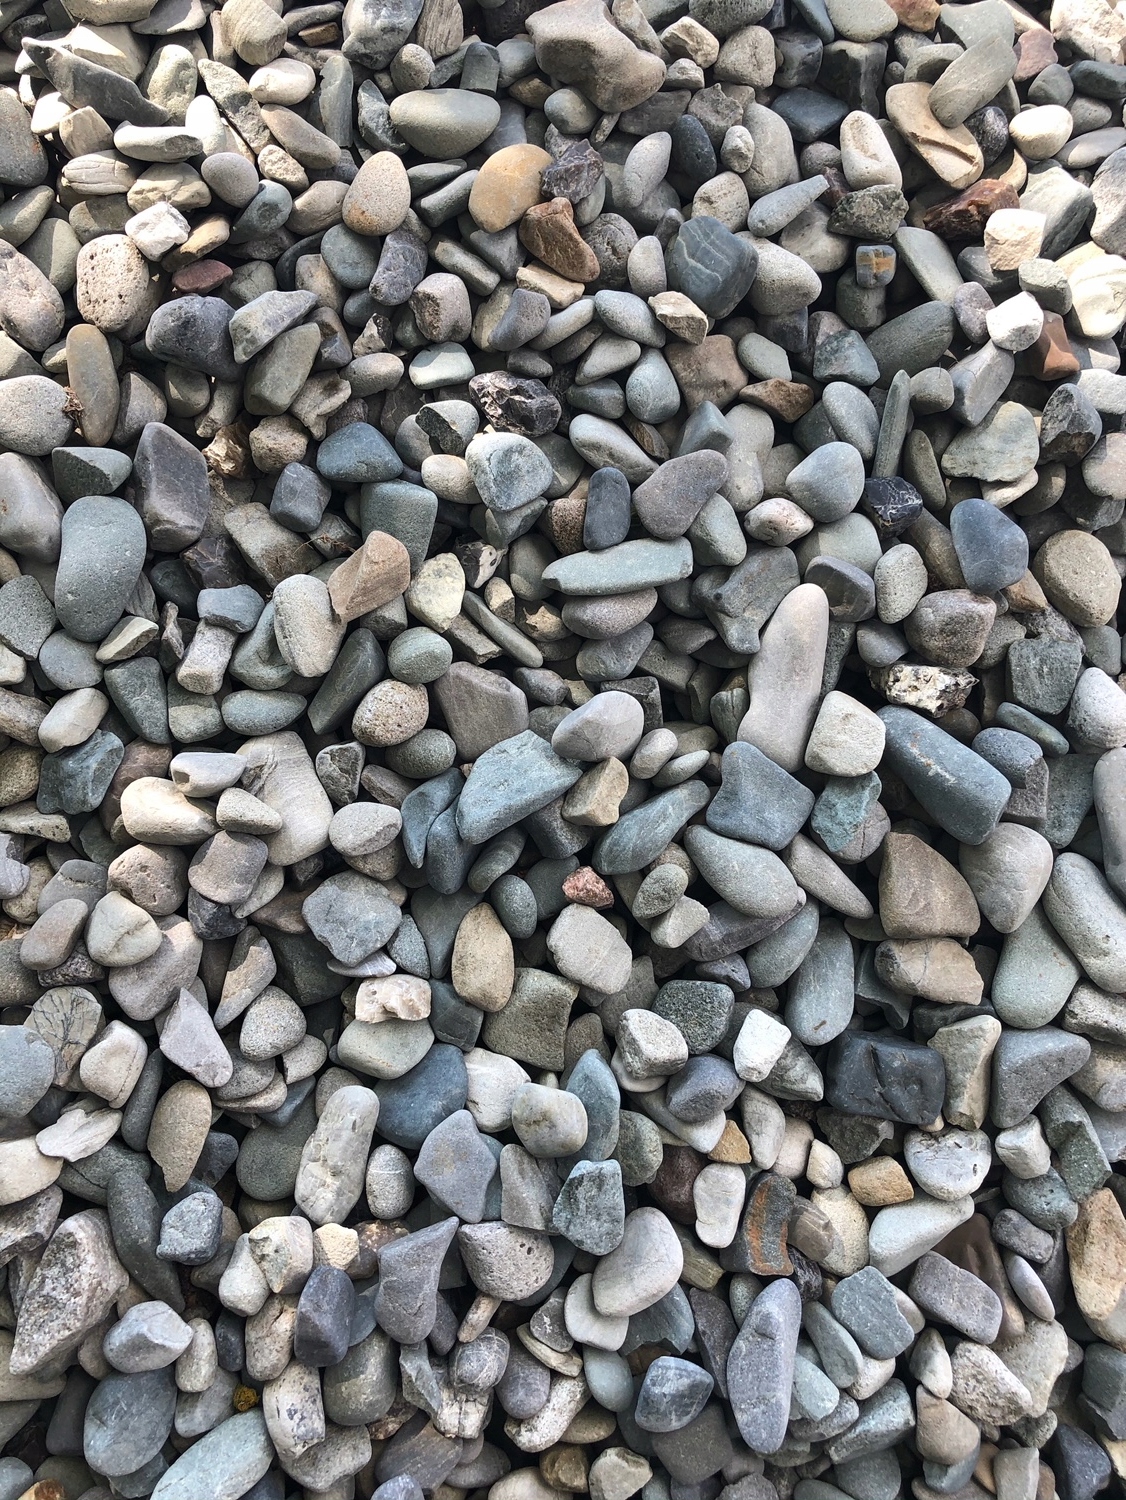 Morský kamienok v rôznych farbách, 20kg kameň, vrece.Kód výrobcu MARINE